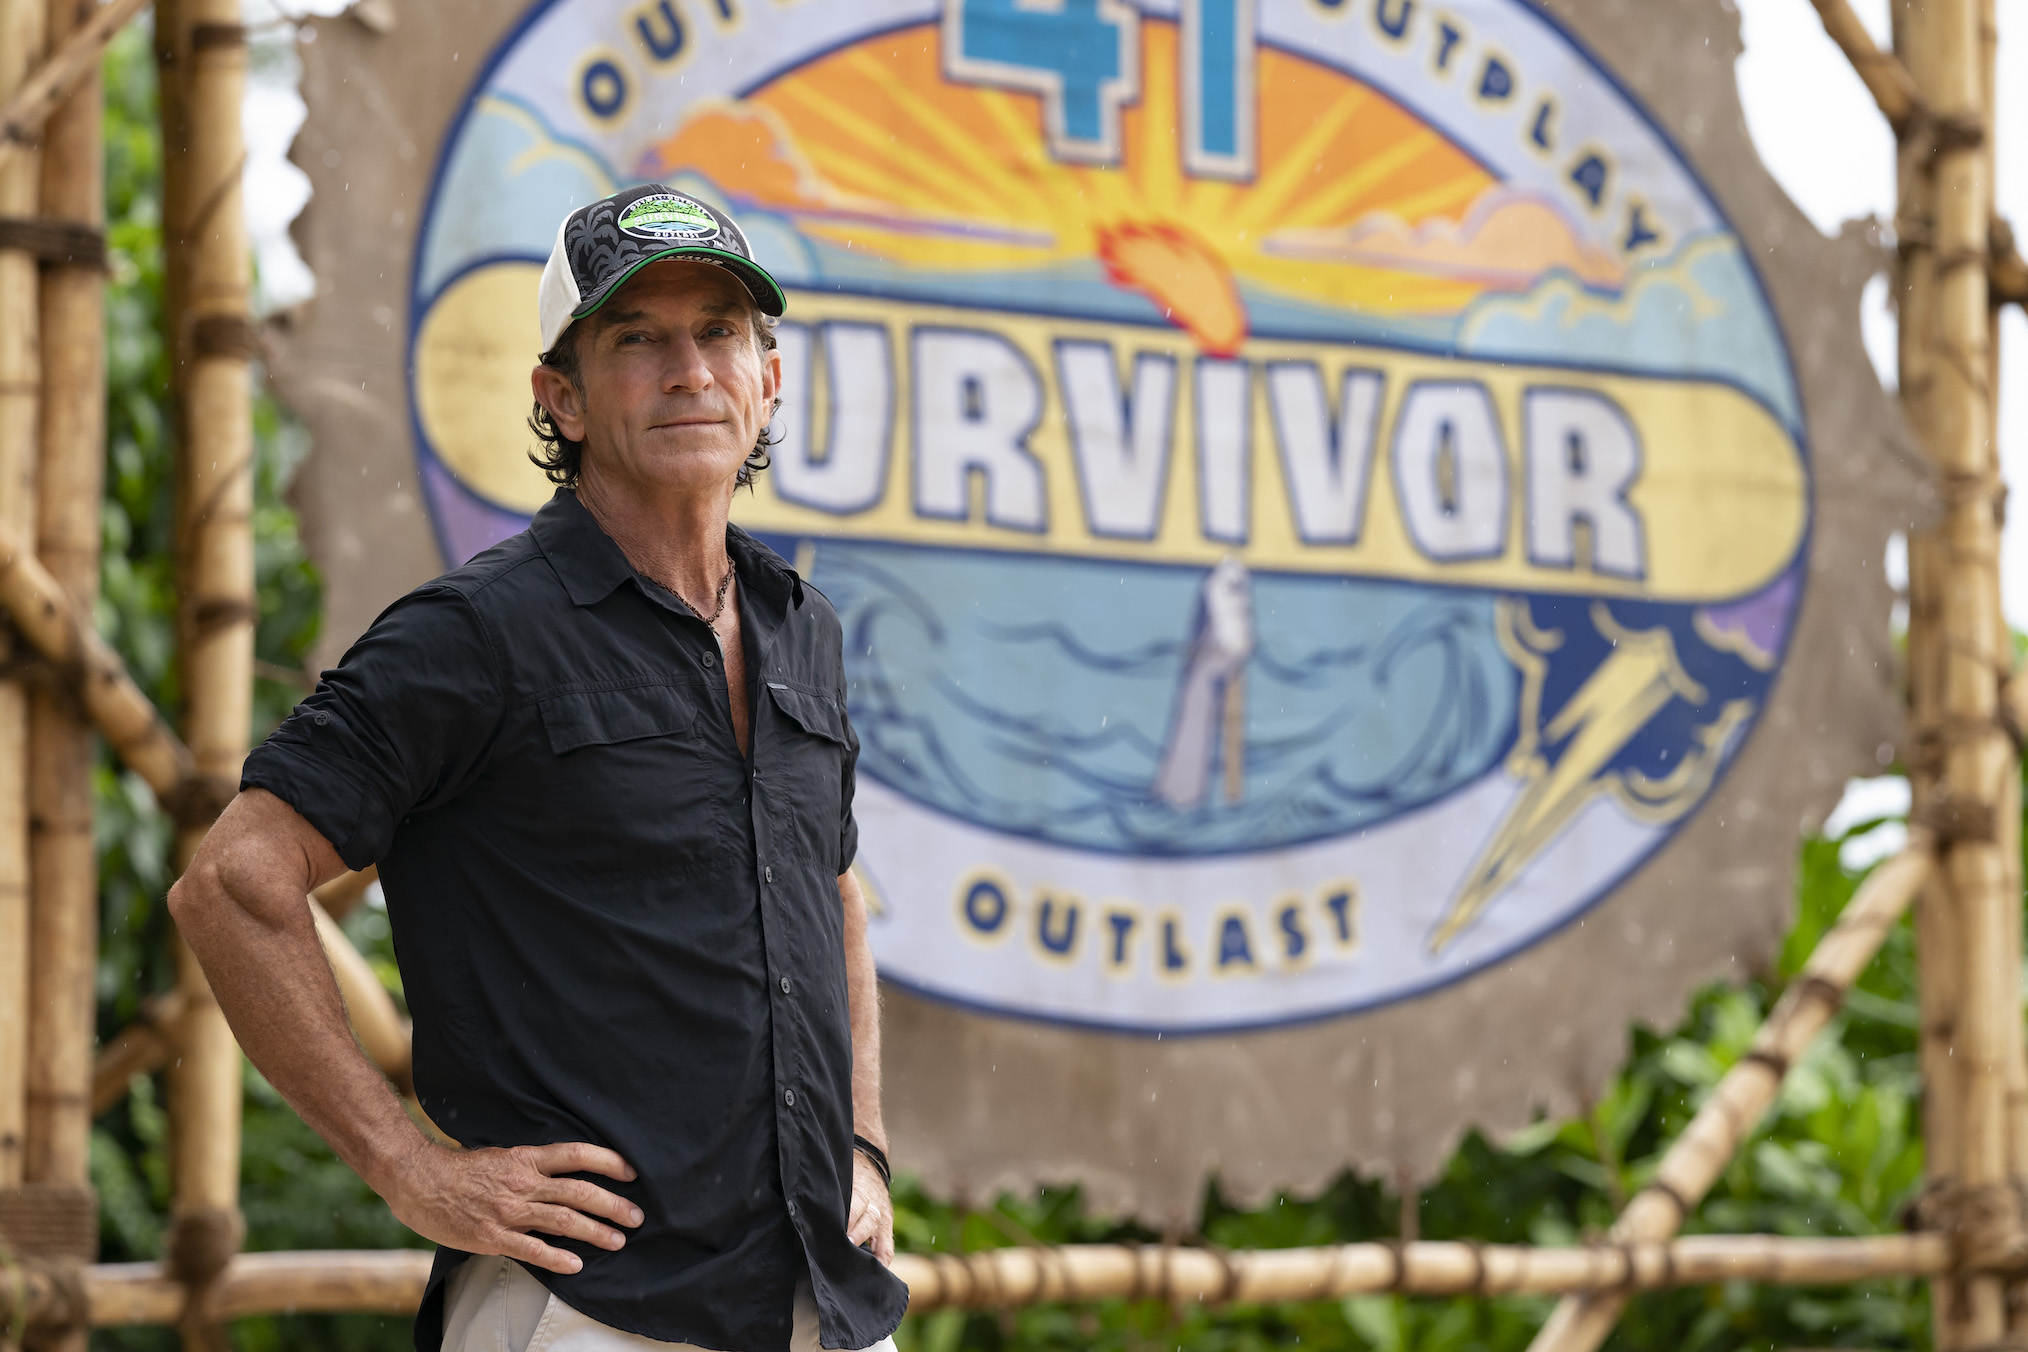 Jeff Probst in Survivor - Season 41